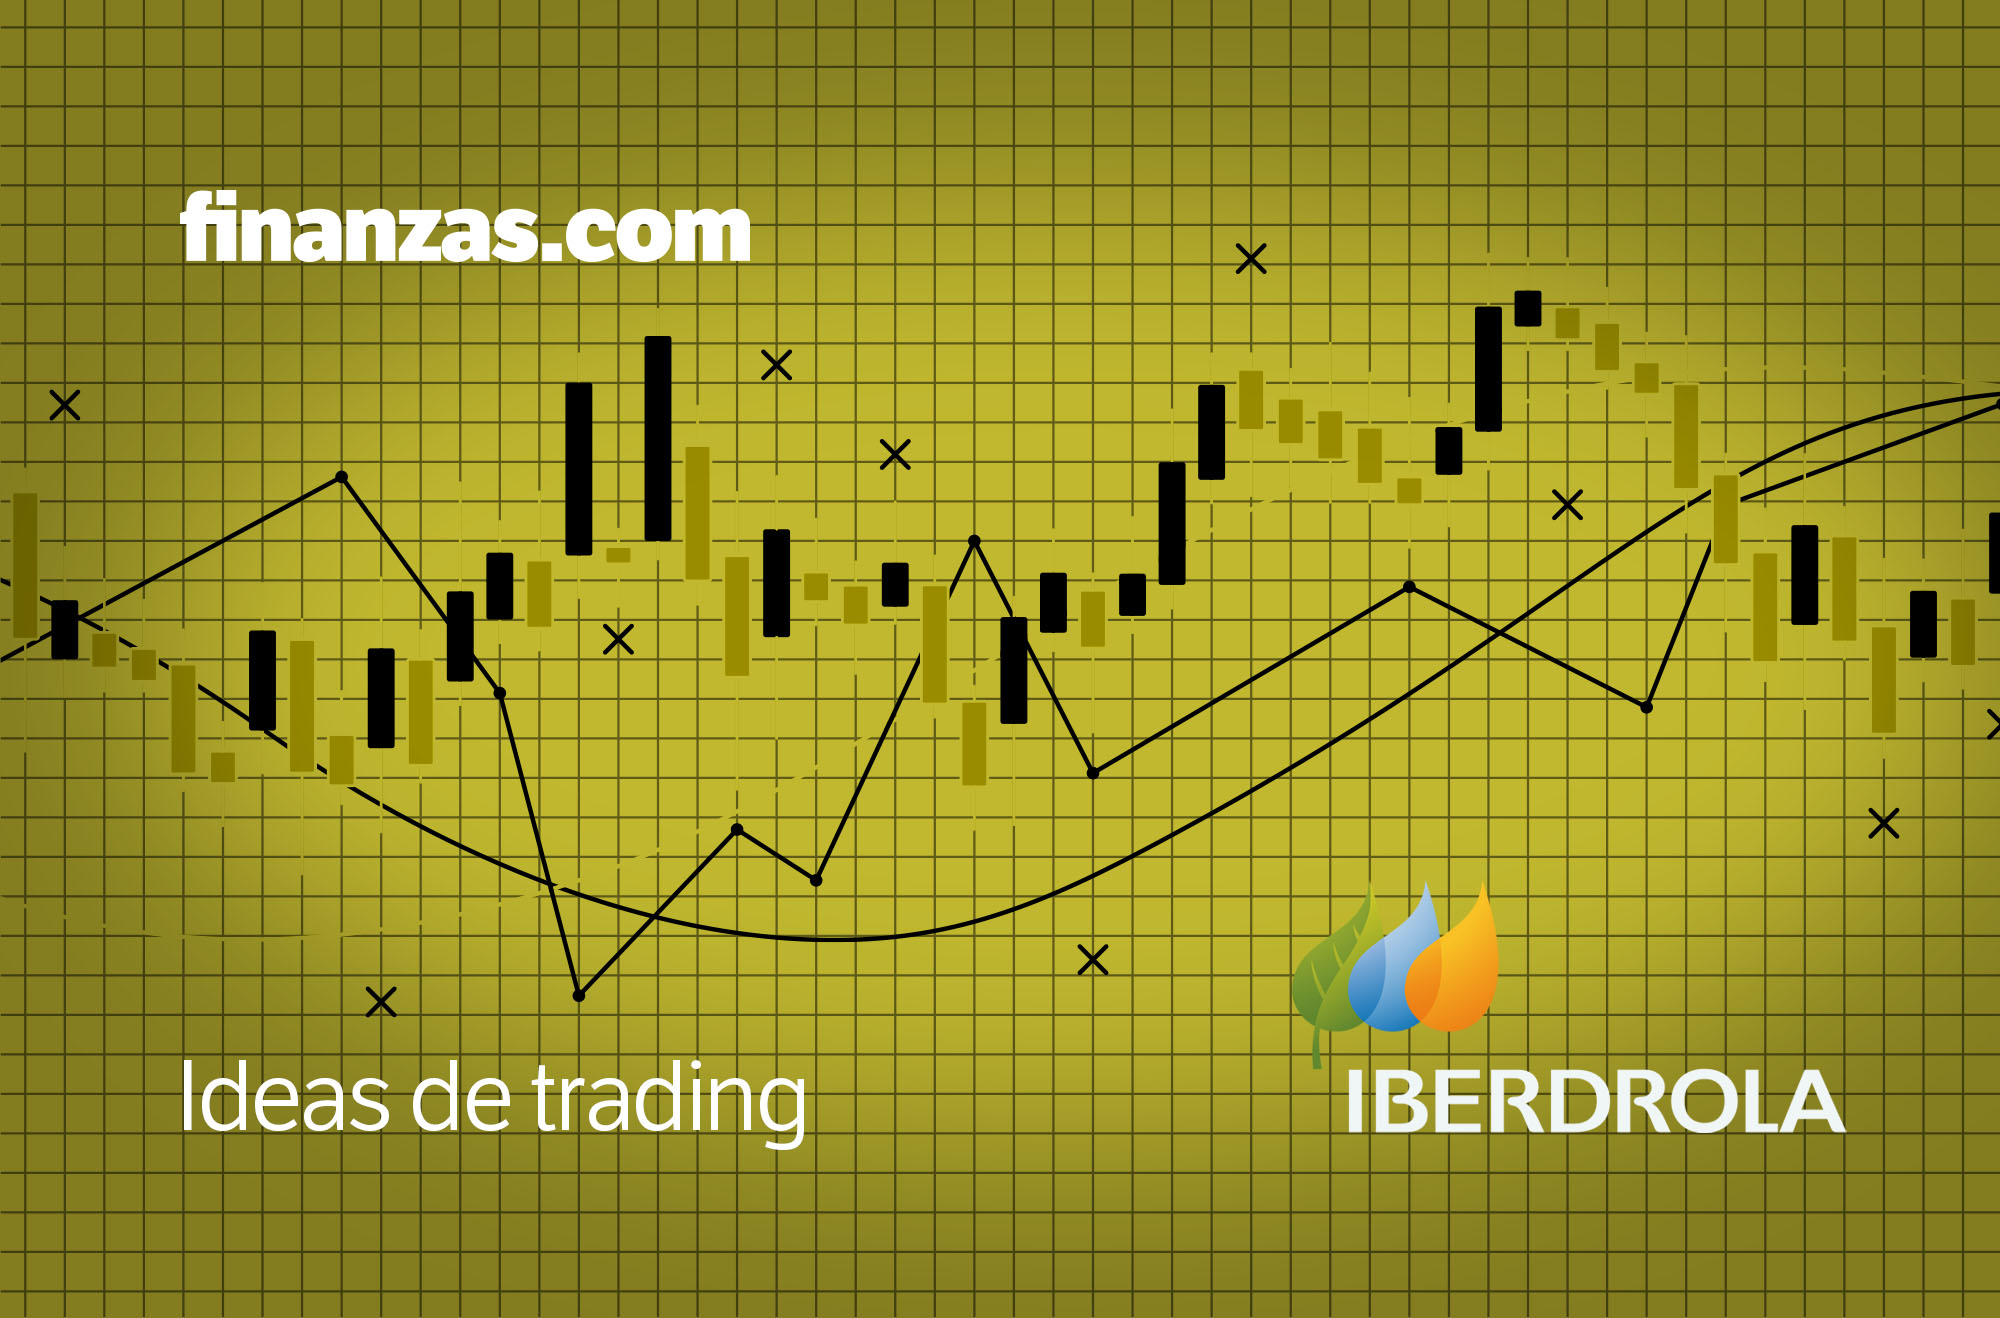 Ideas de trading: entrada en Iberdrola con la superación de los 9,95€ thumbnail